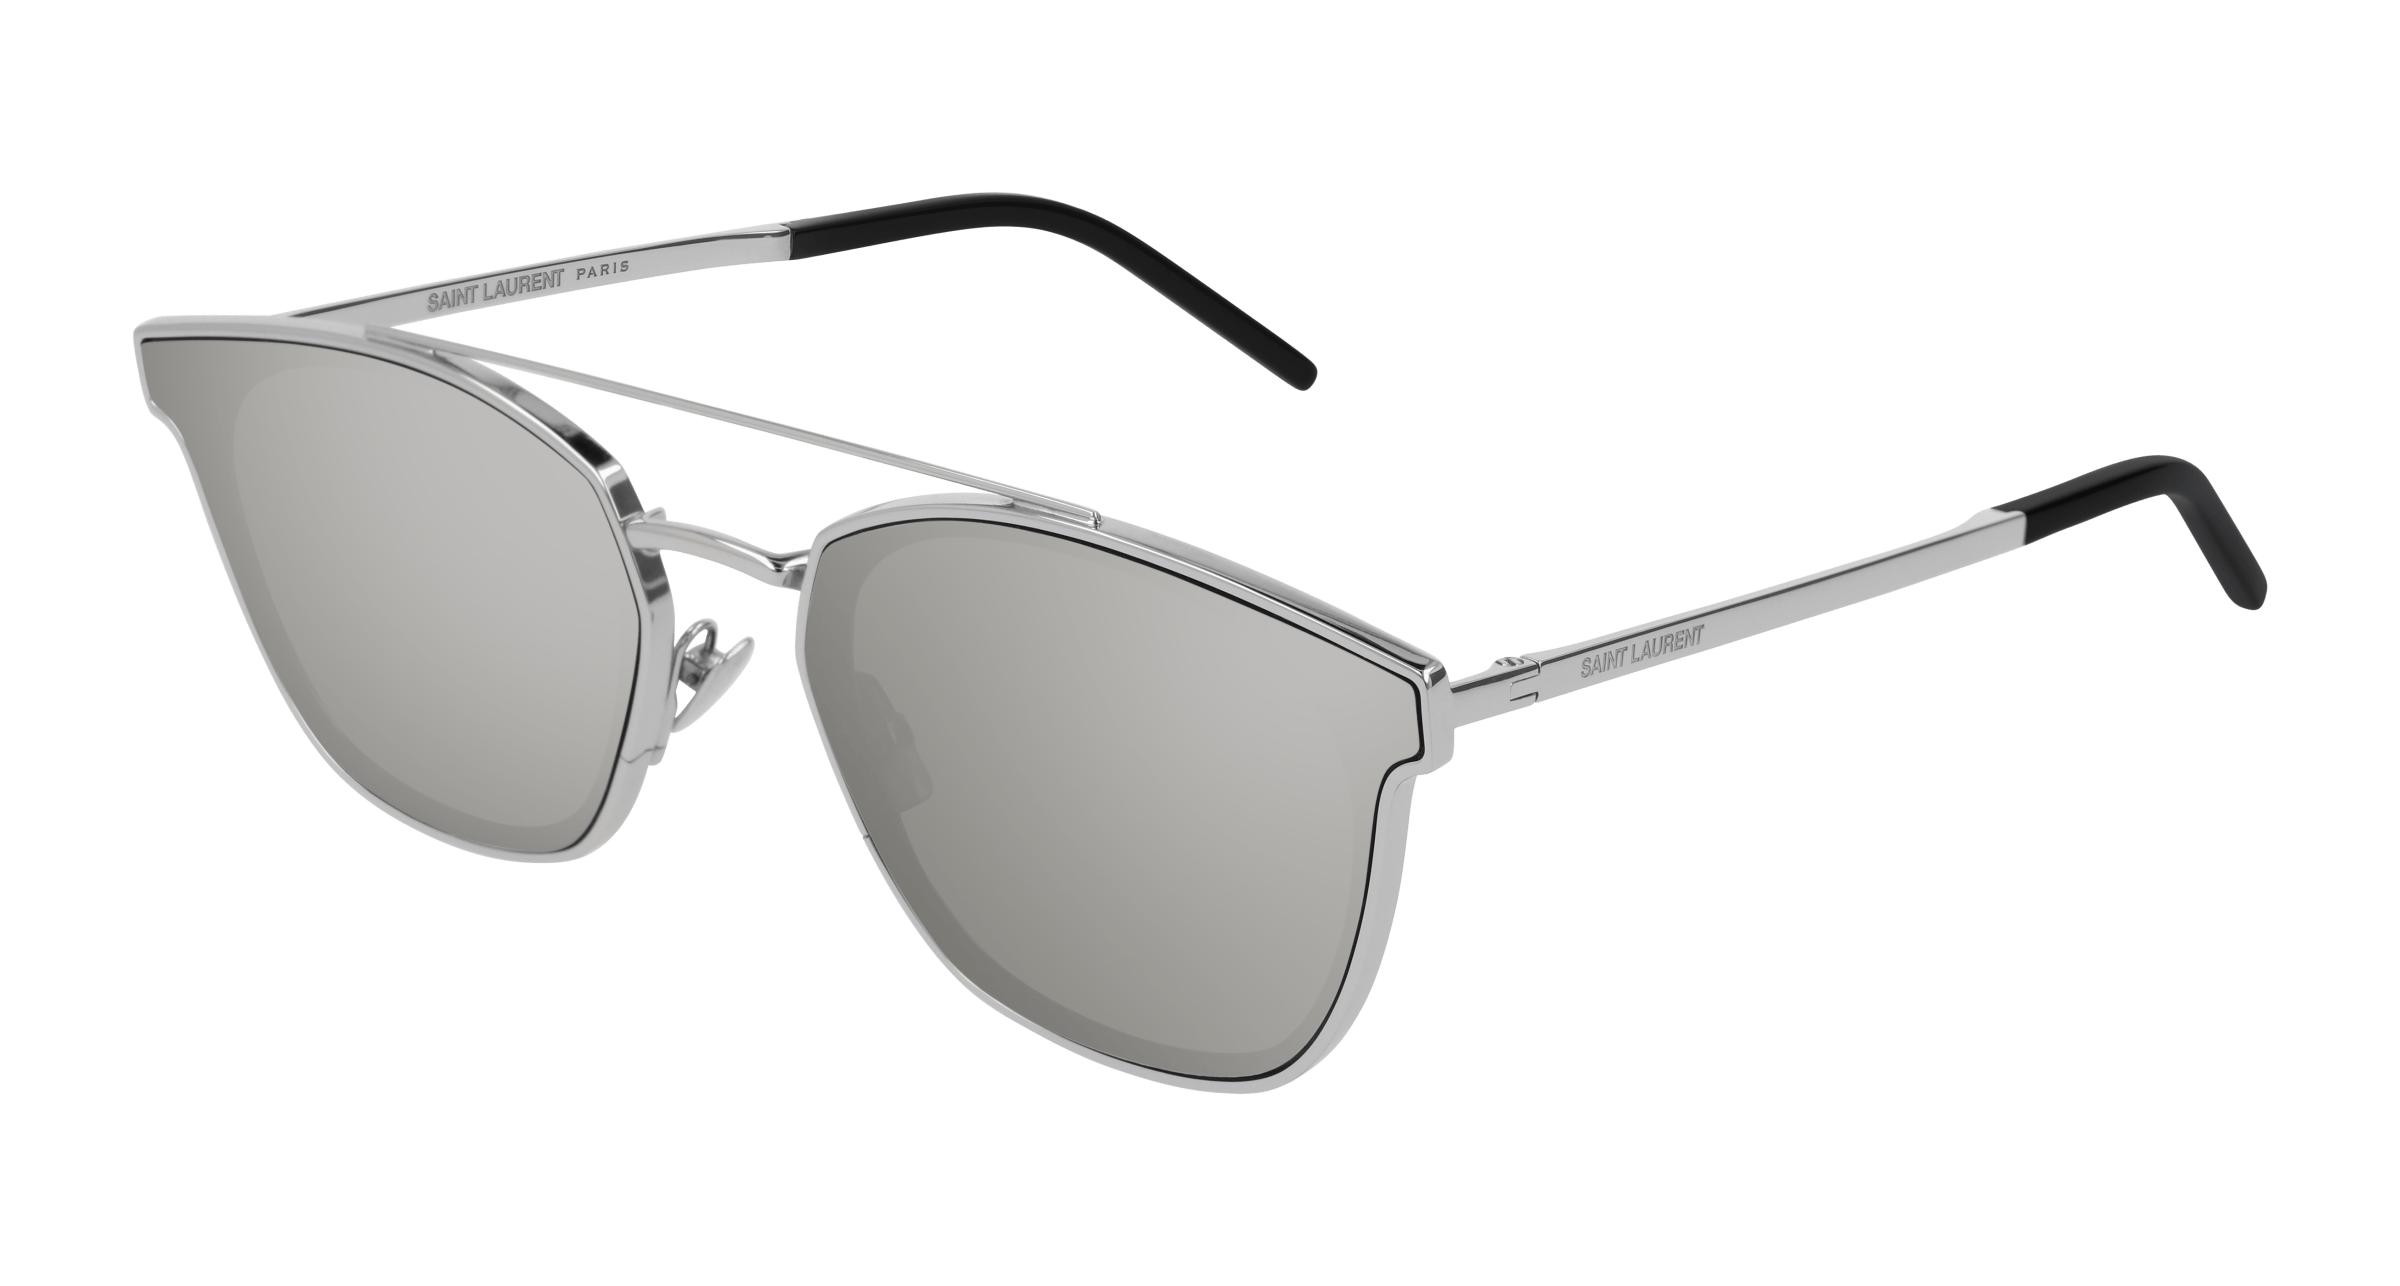 Saint Laurent CLASSIC 11 Sunglasses - Ottica Rizzato